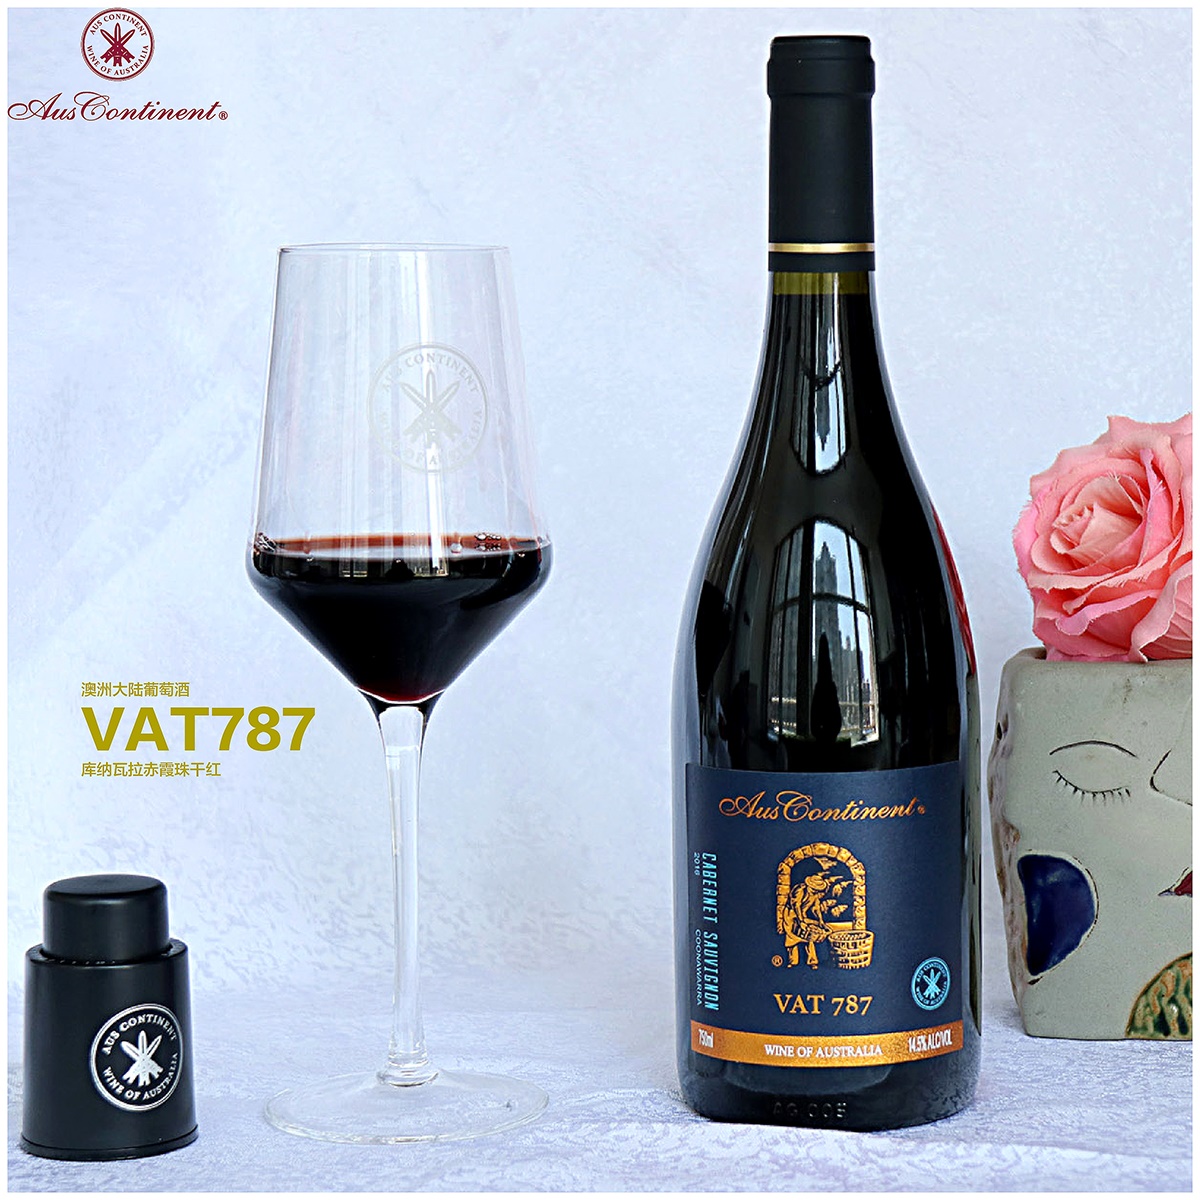 澳大利亚库纳瓦拉澳洲大陆酒庄赤霞珠VAT 787干红葡萄酒红酒